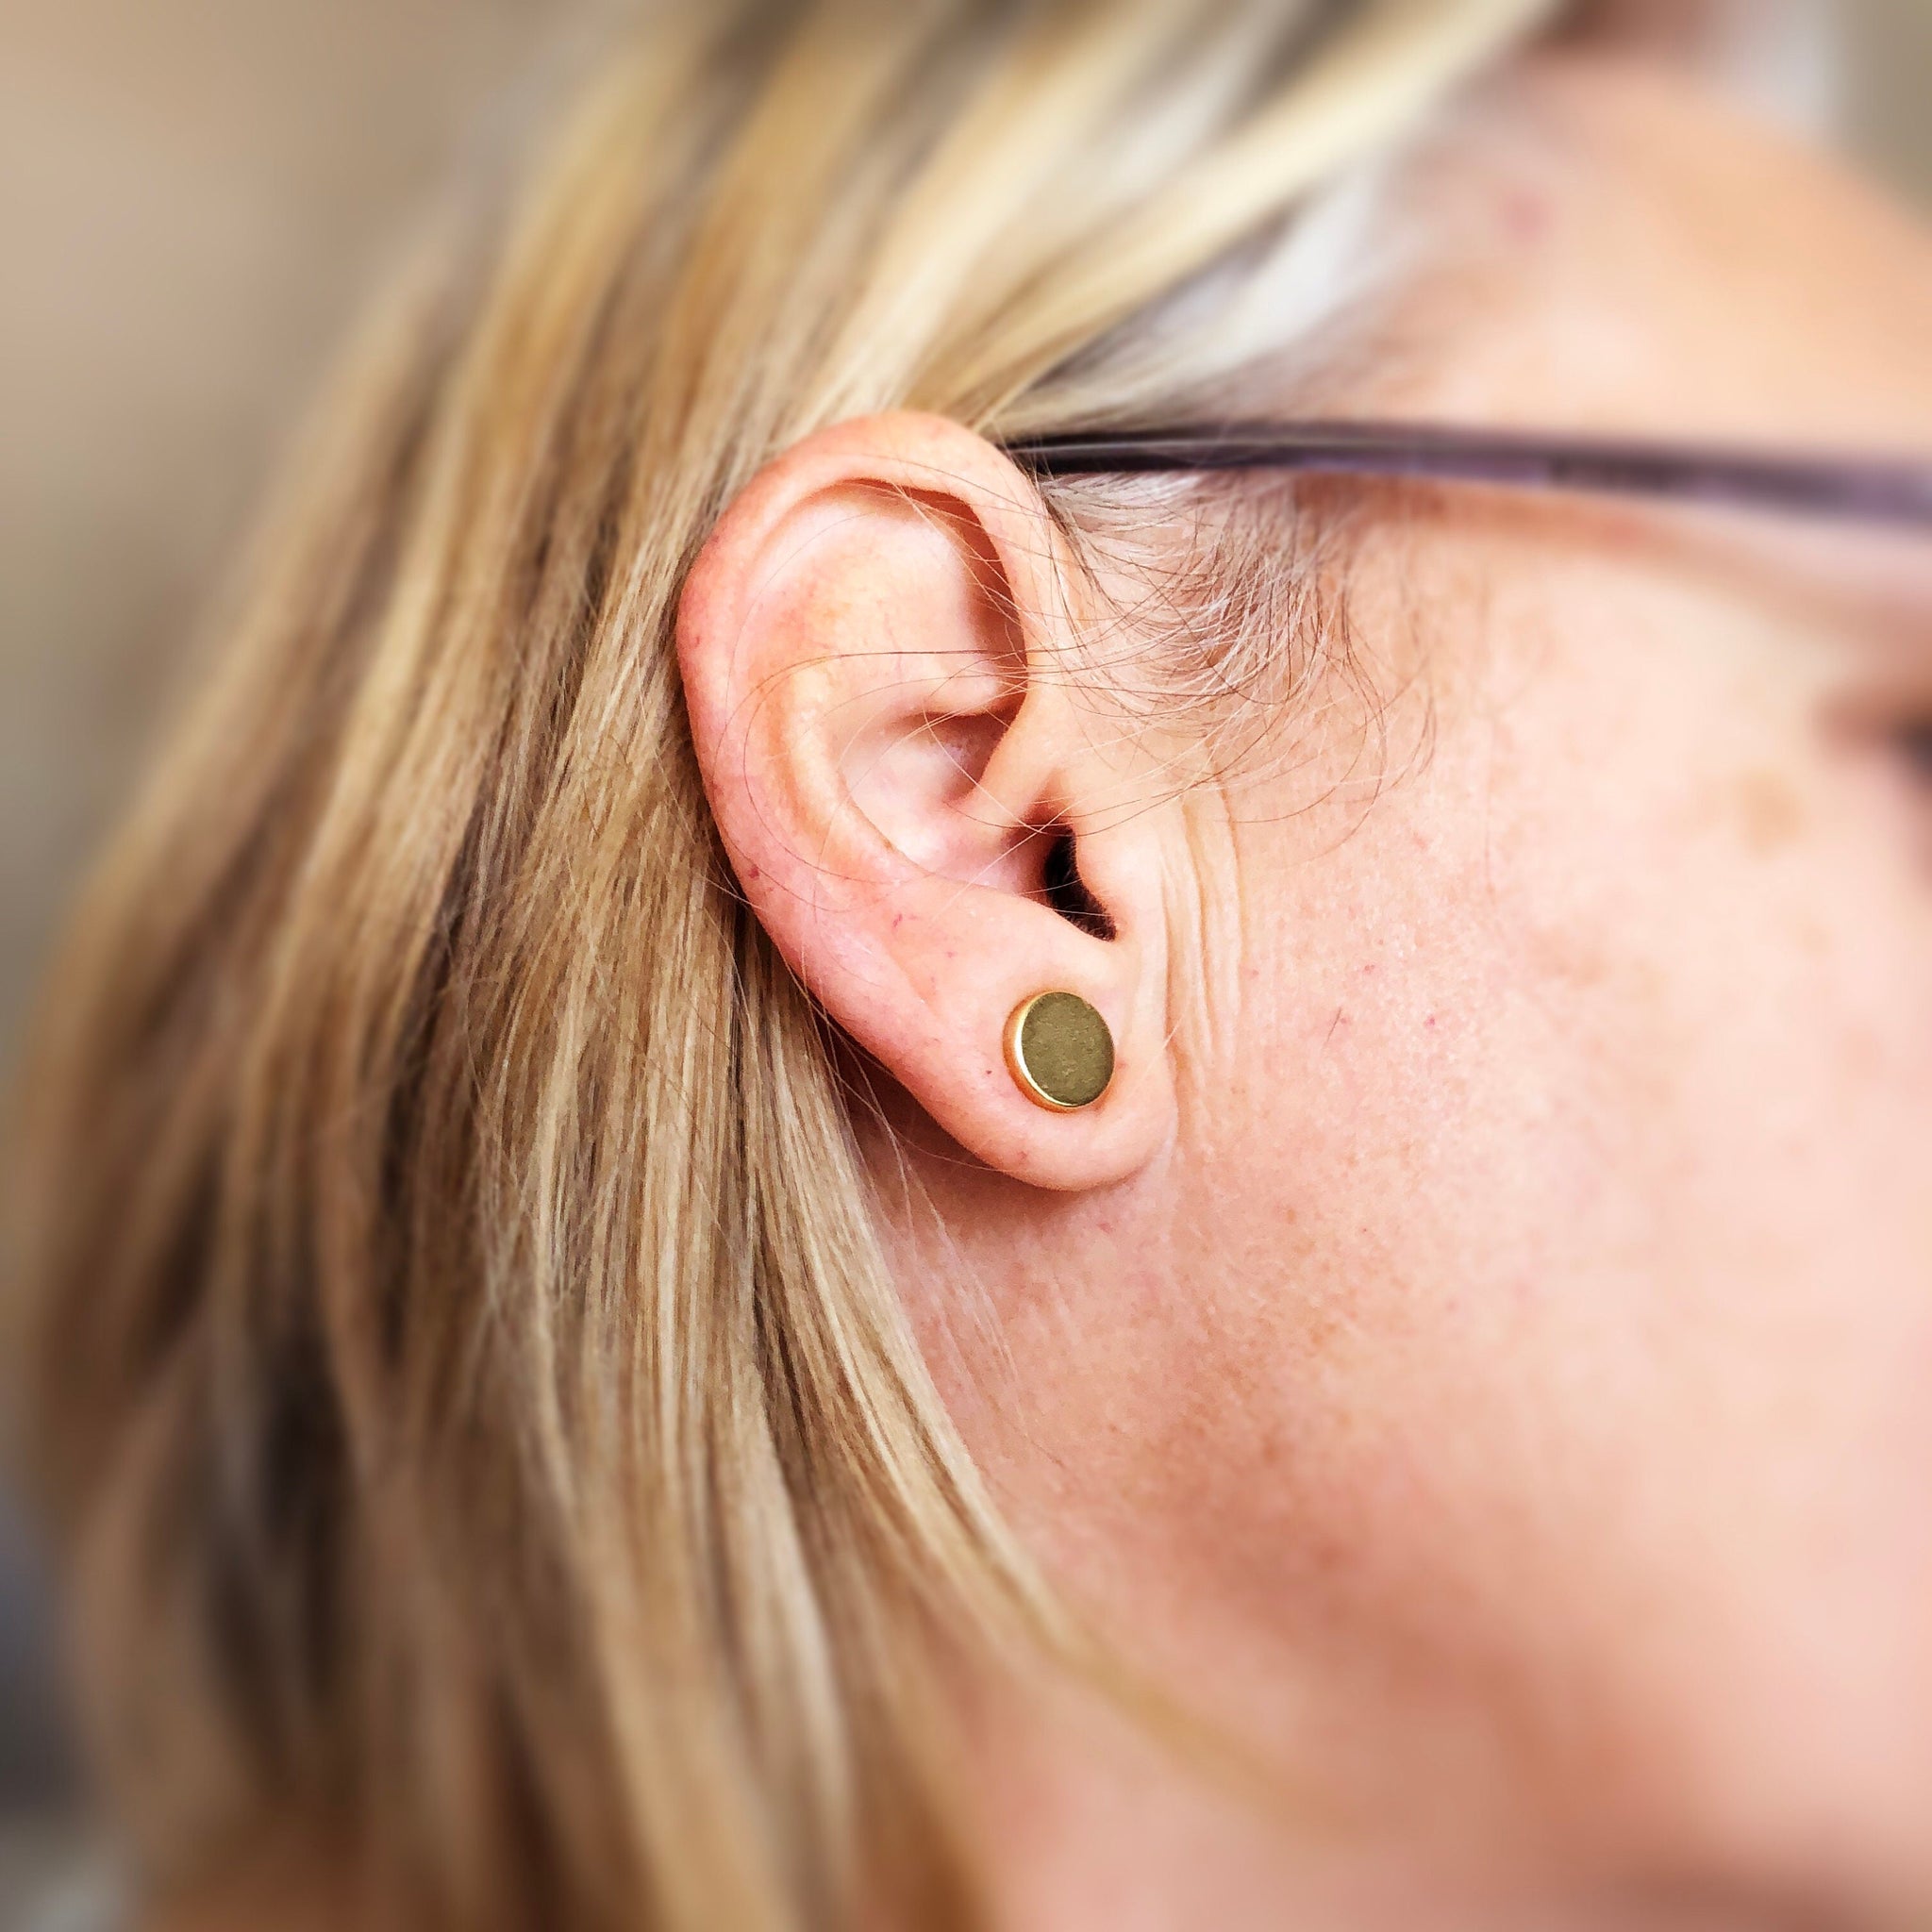 Magnetic keloid scar treatment, pressure earrings - Silver, Gold